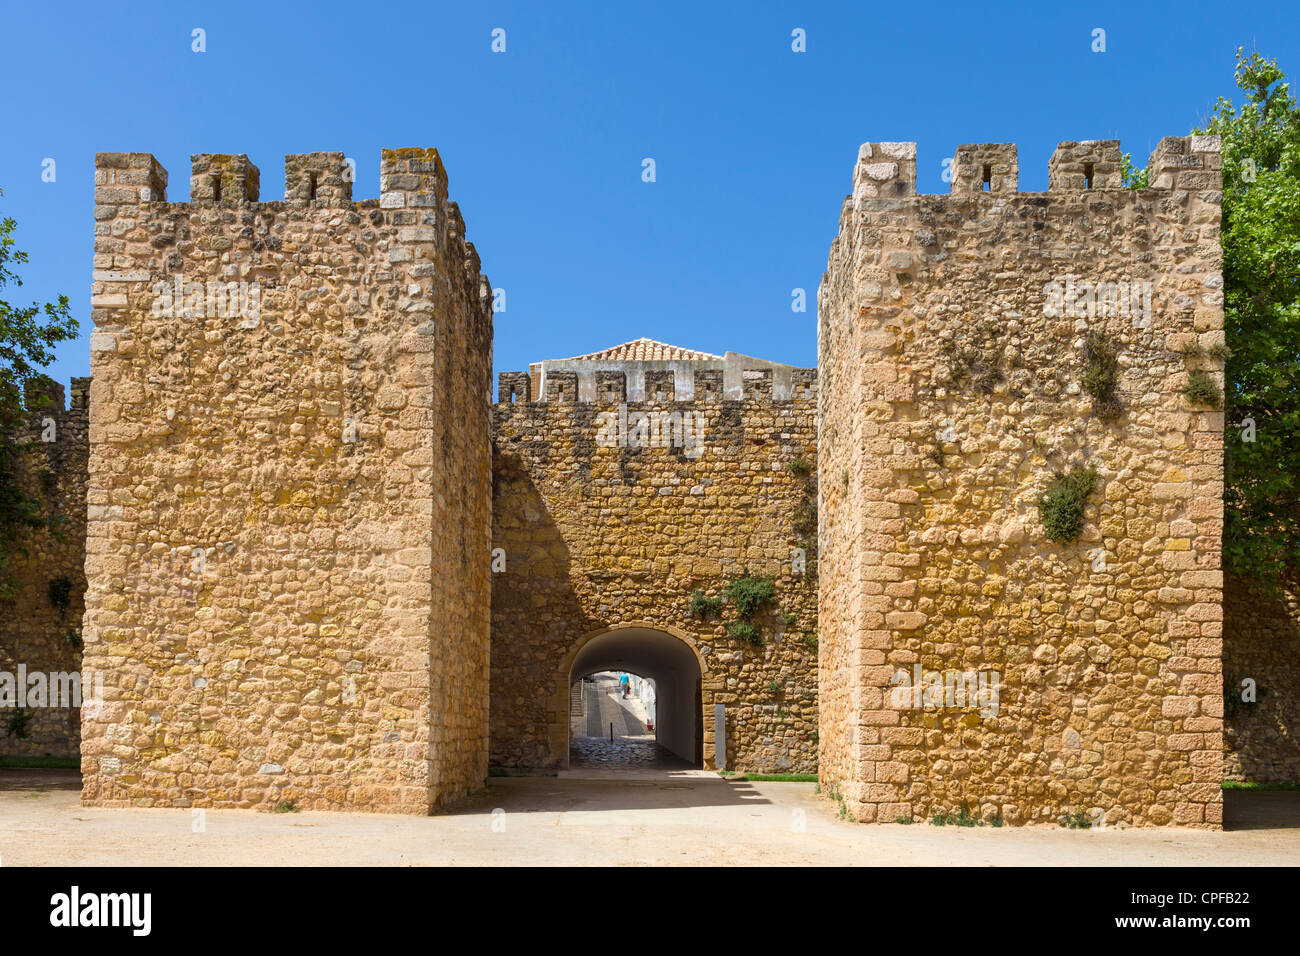 L'Arco de Sao Goncalo (Sao Goncalo Gate) dans les murs de la vieille ville (Cidade Velha), Lagos, Algarve, Portugal Banque D'Images